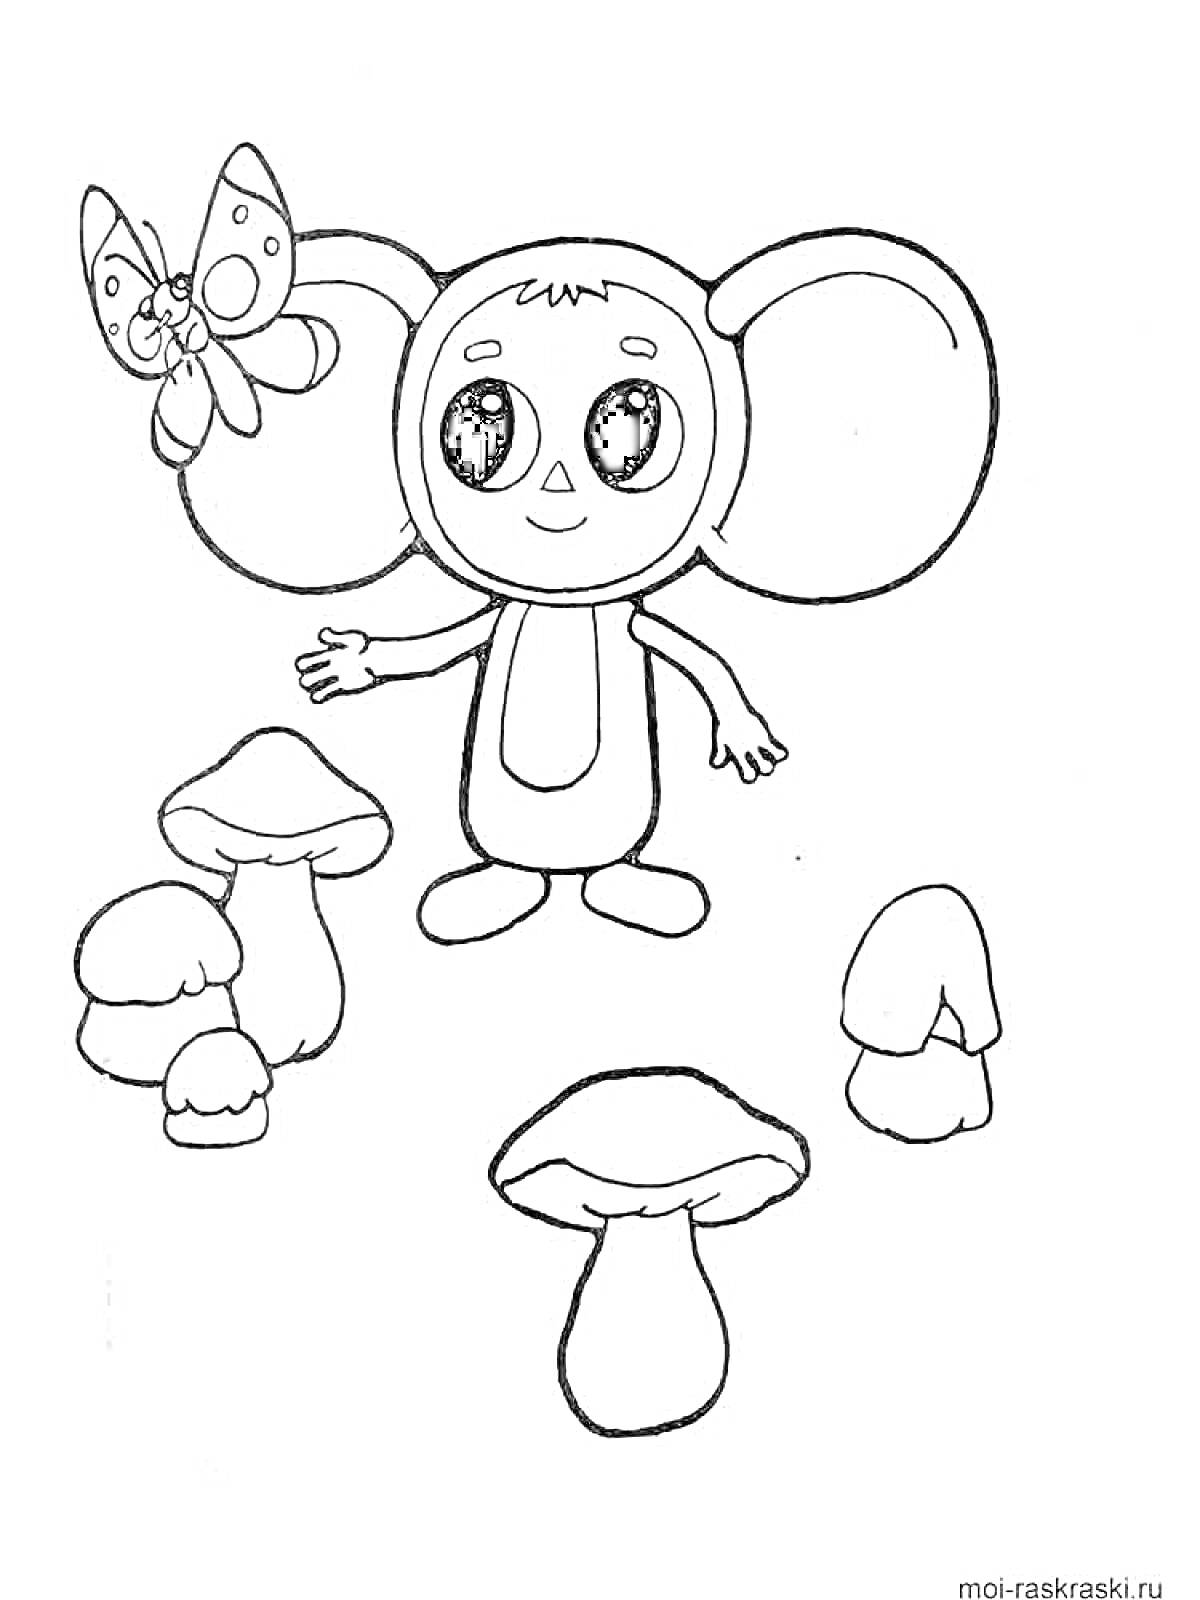 Раскраска Чебурашка с бабочкой и грибами